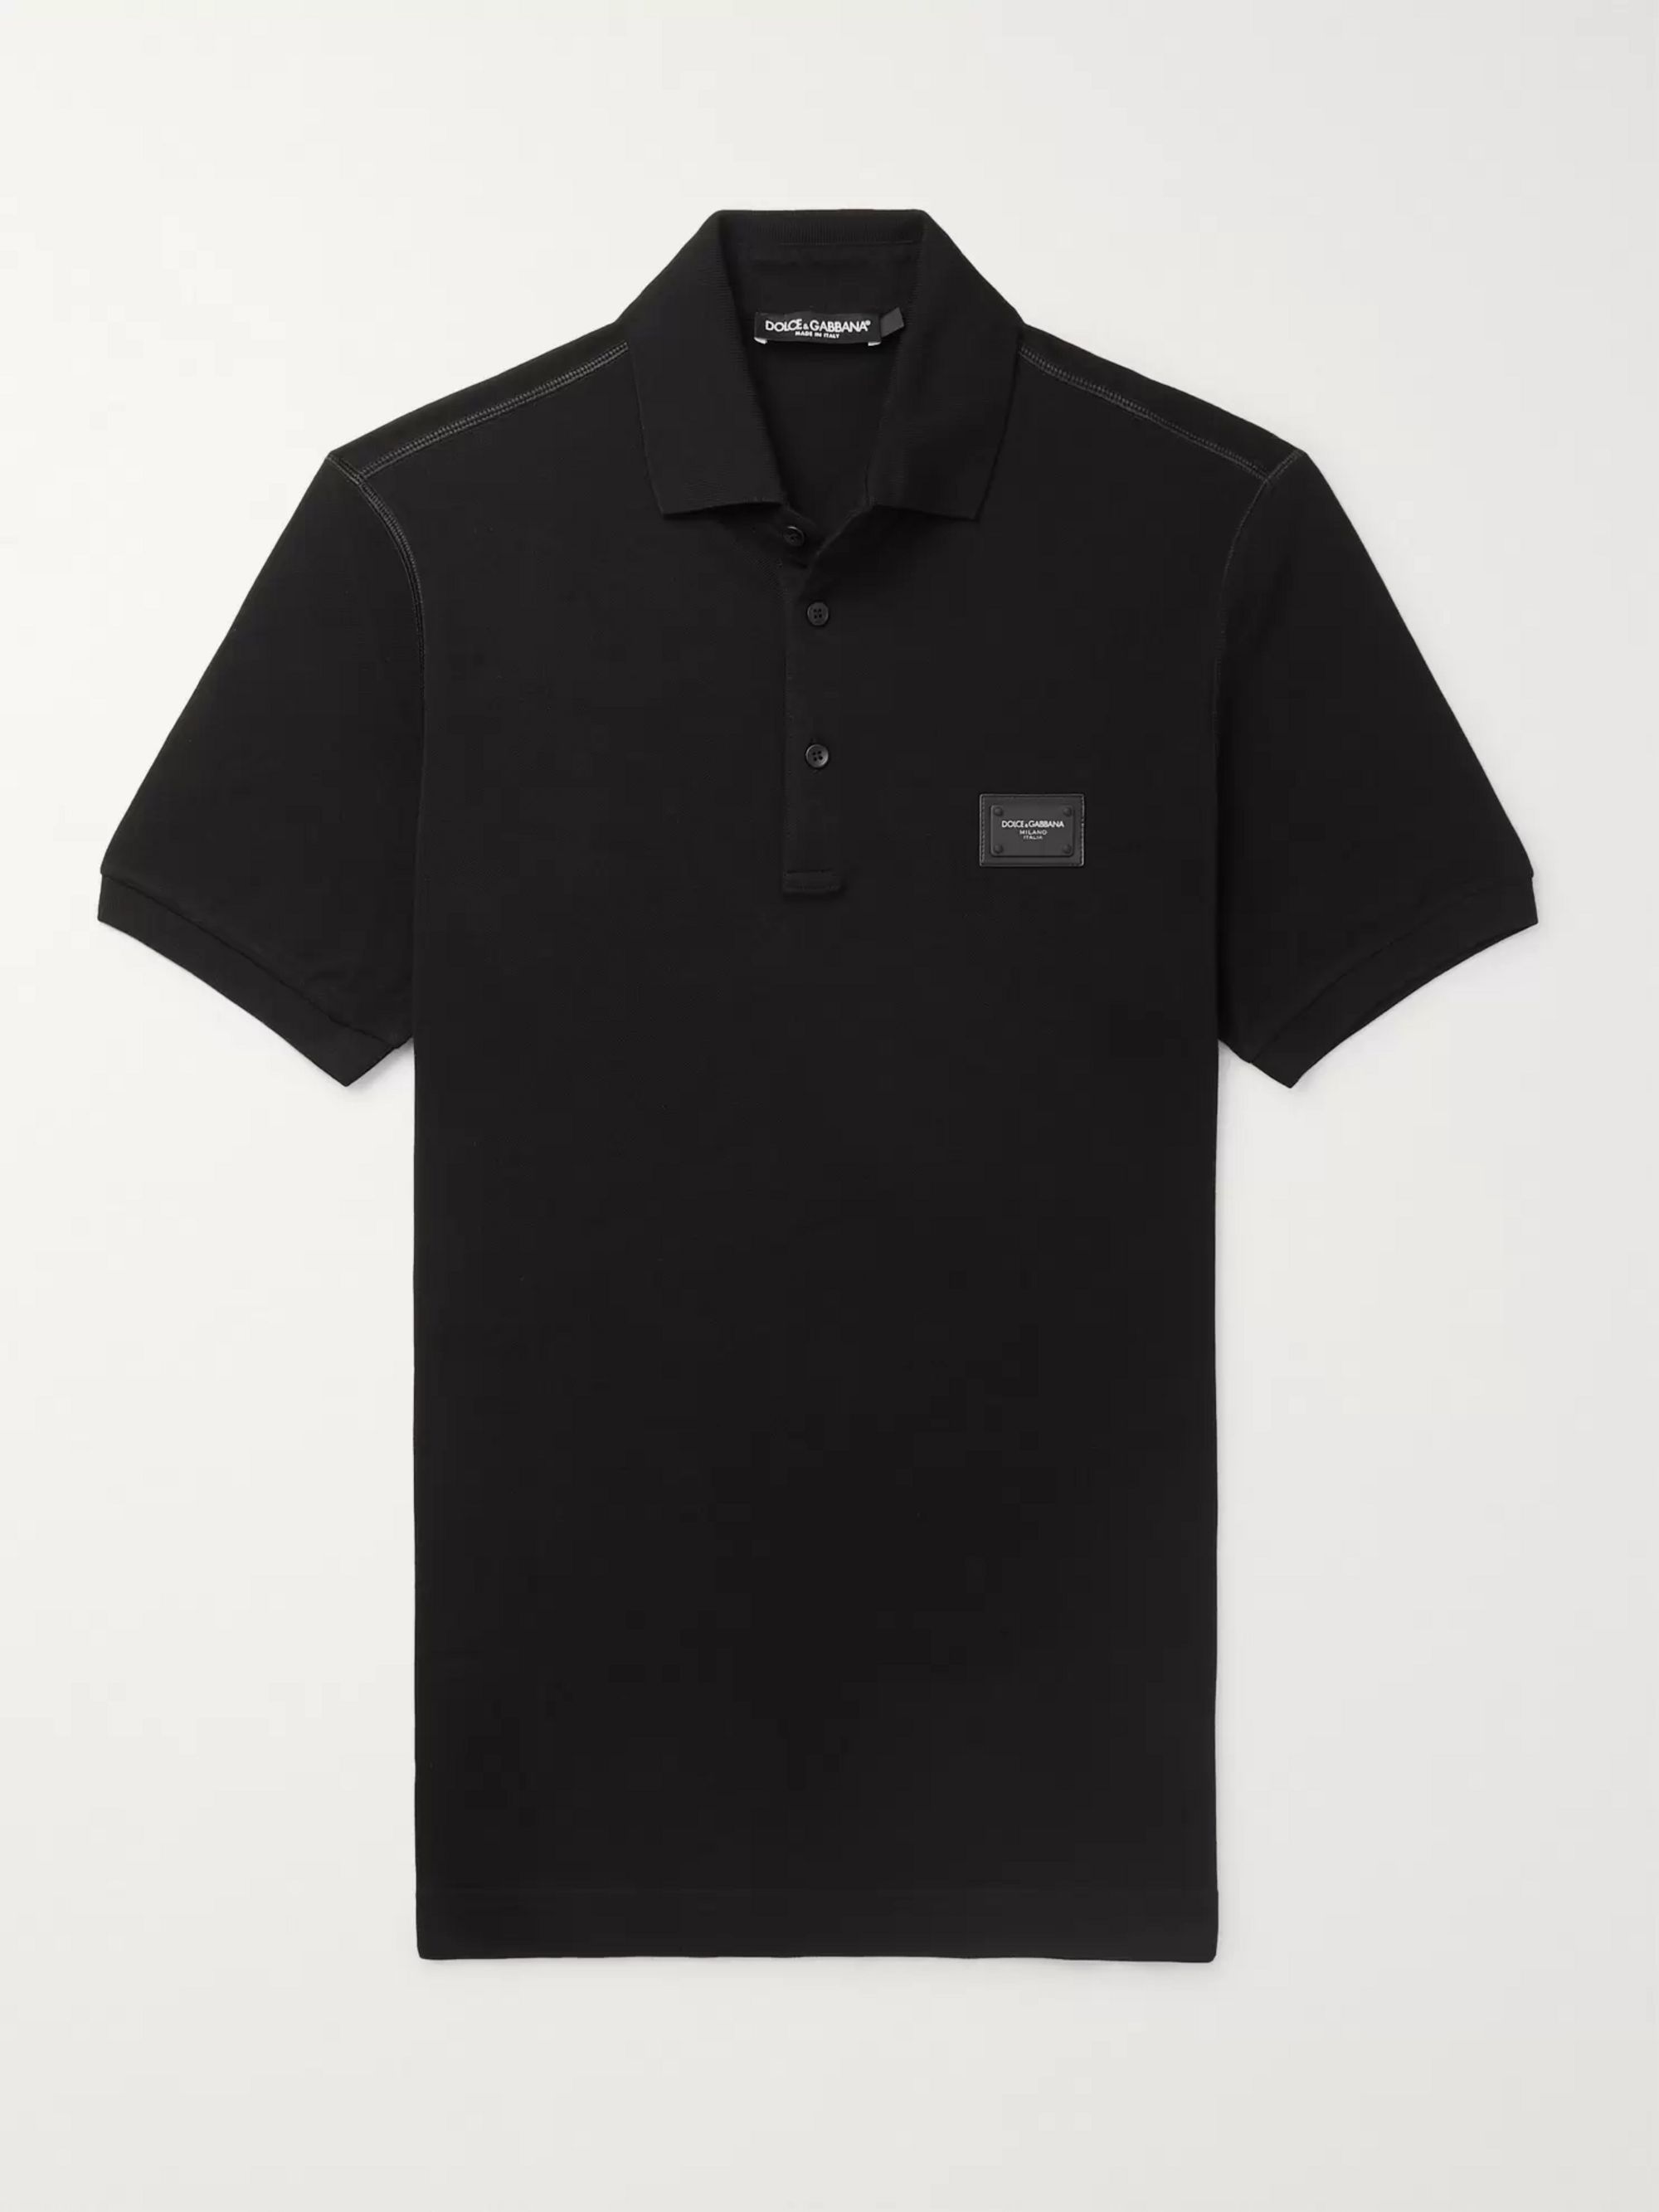 dolce and gabbana black polo shirt